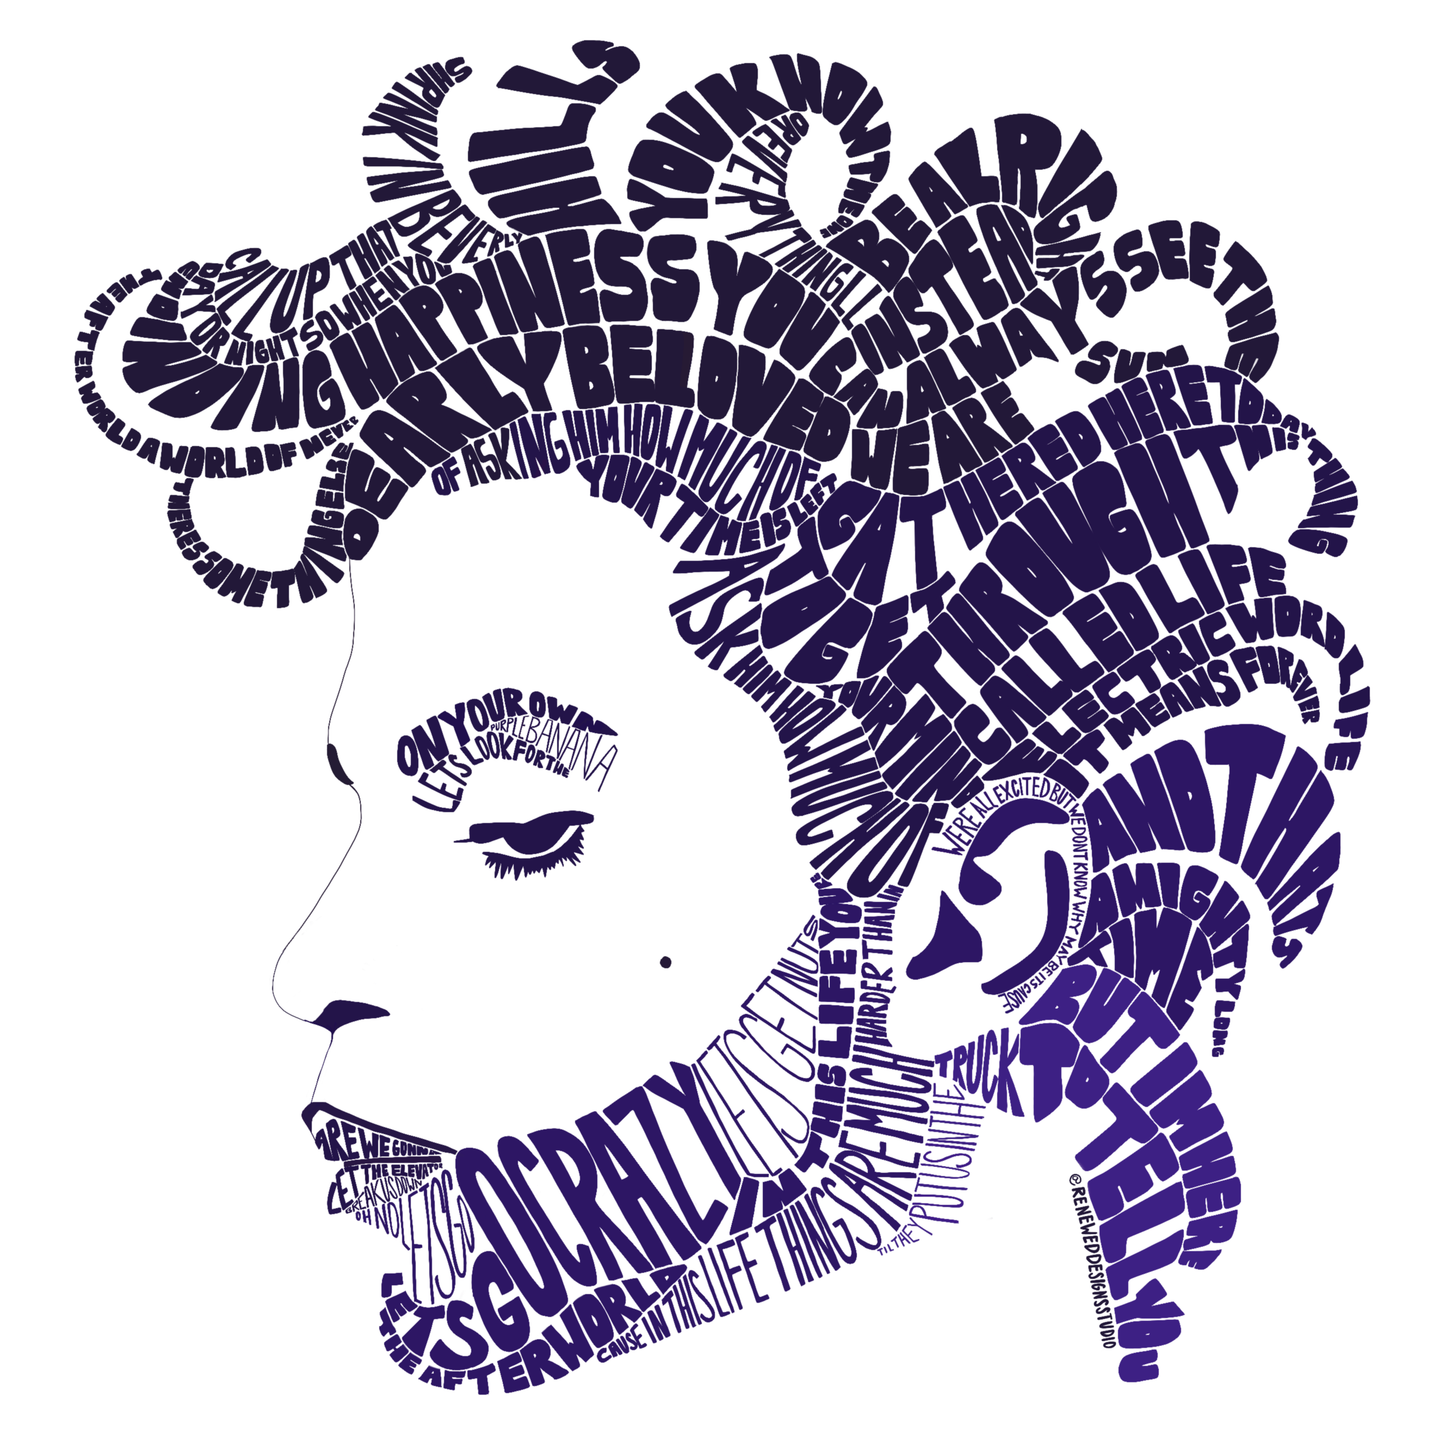 Prince - "Let's Go Crazy" Word Portrait